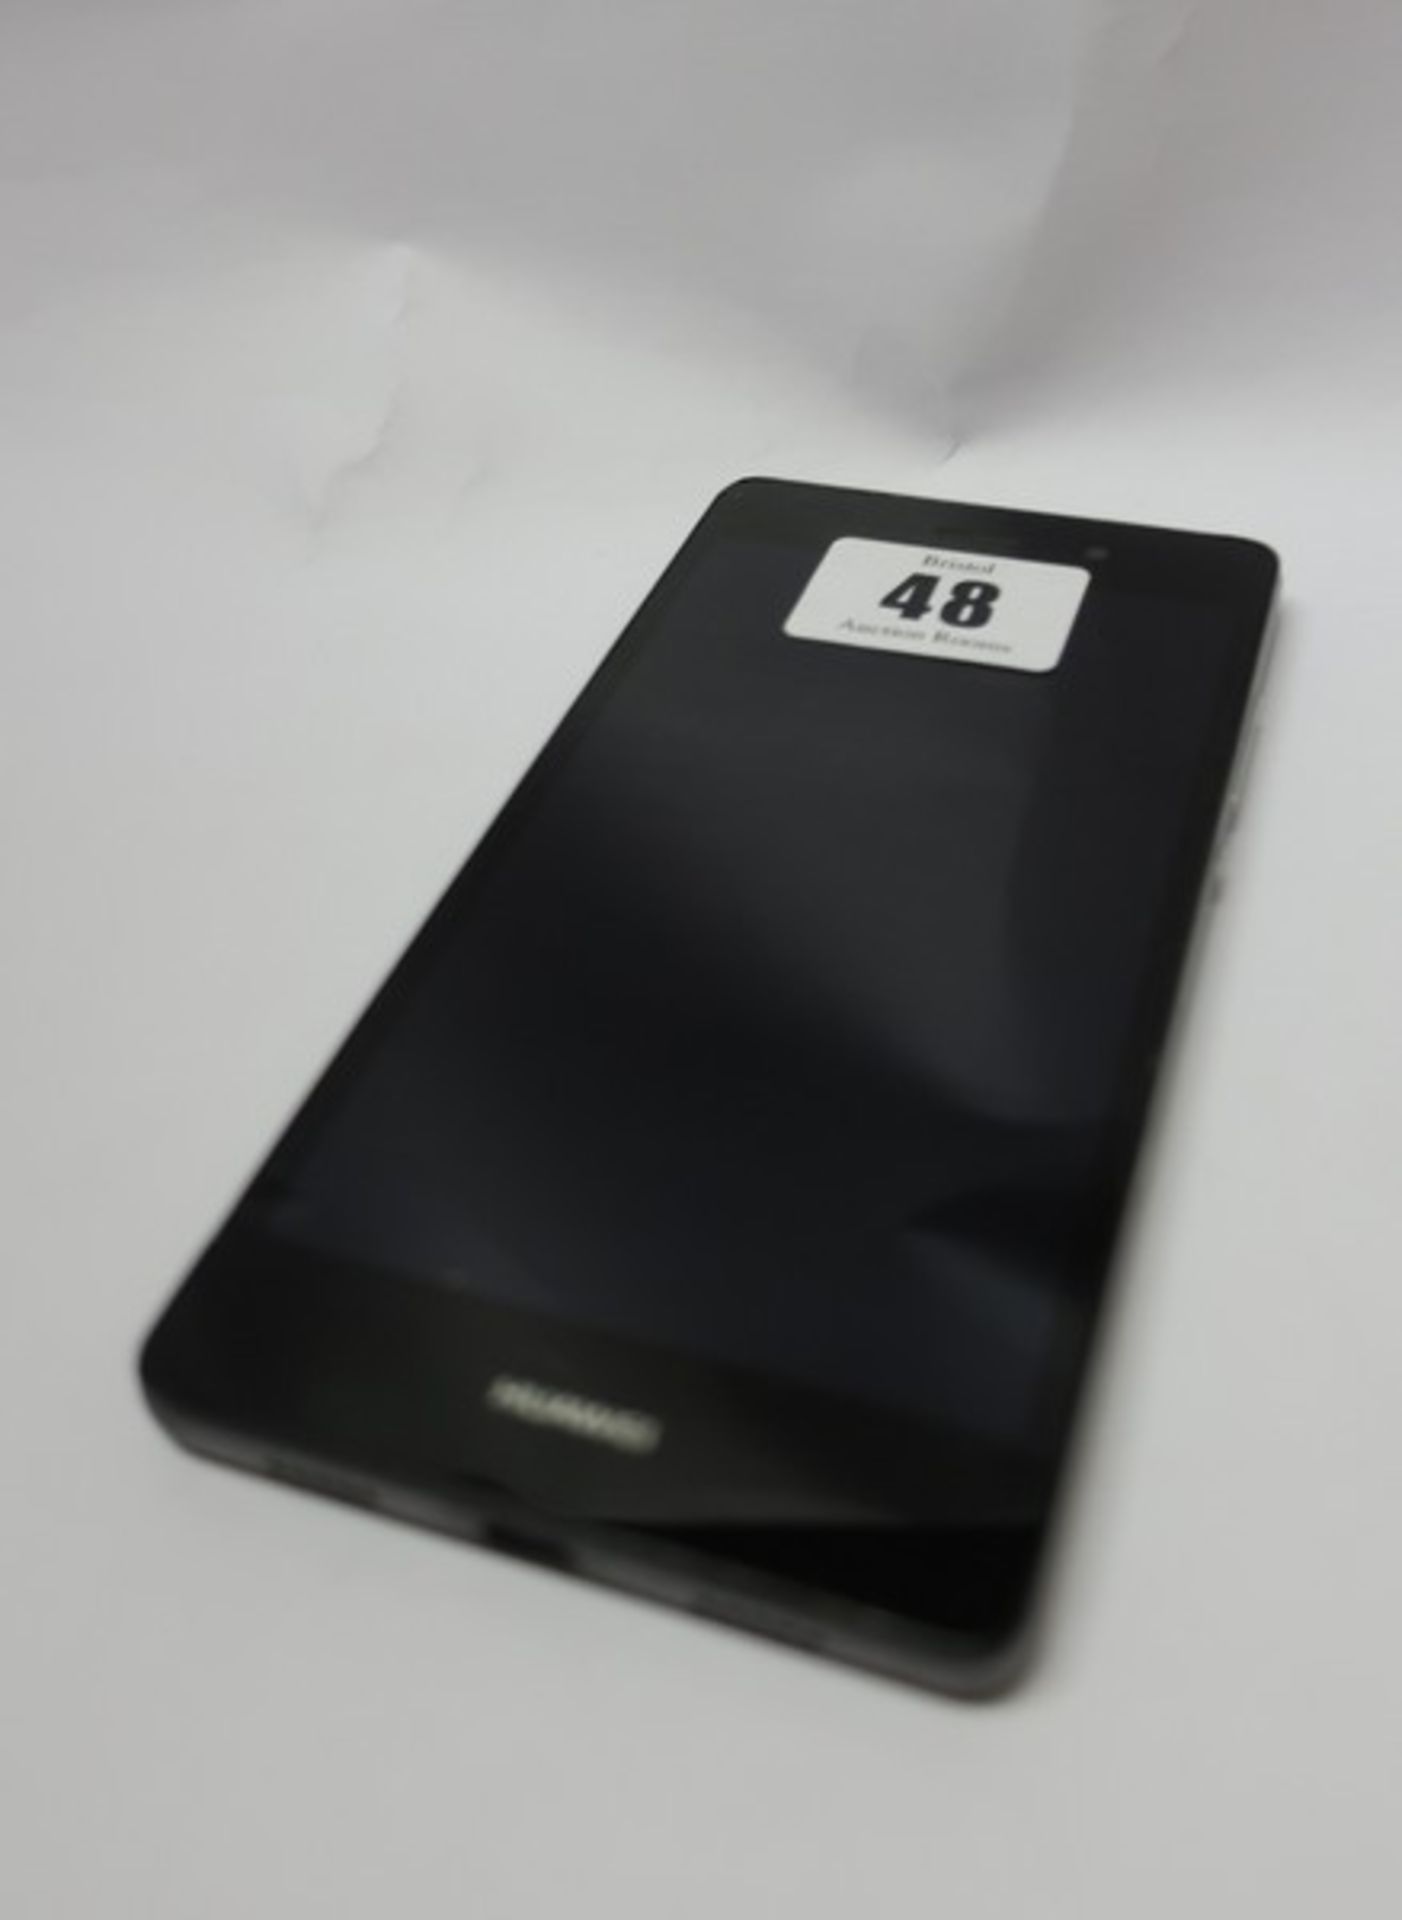 A Huawei P8 Lite ALE-L21 Dual Sim 16GB in Black (IMEI: 862046036724920) (FRP clear, slight crack